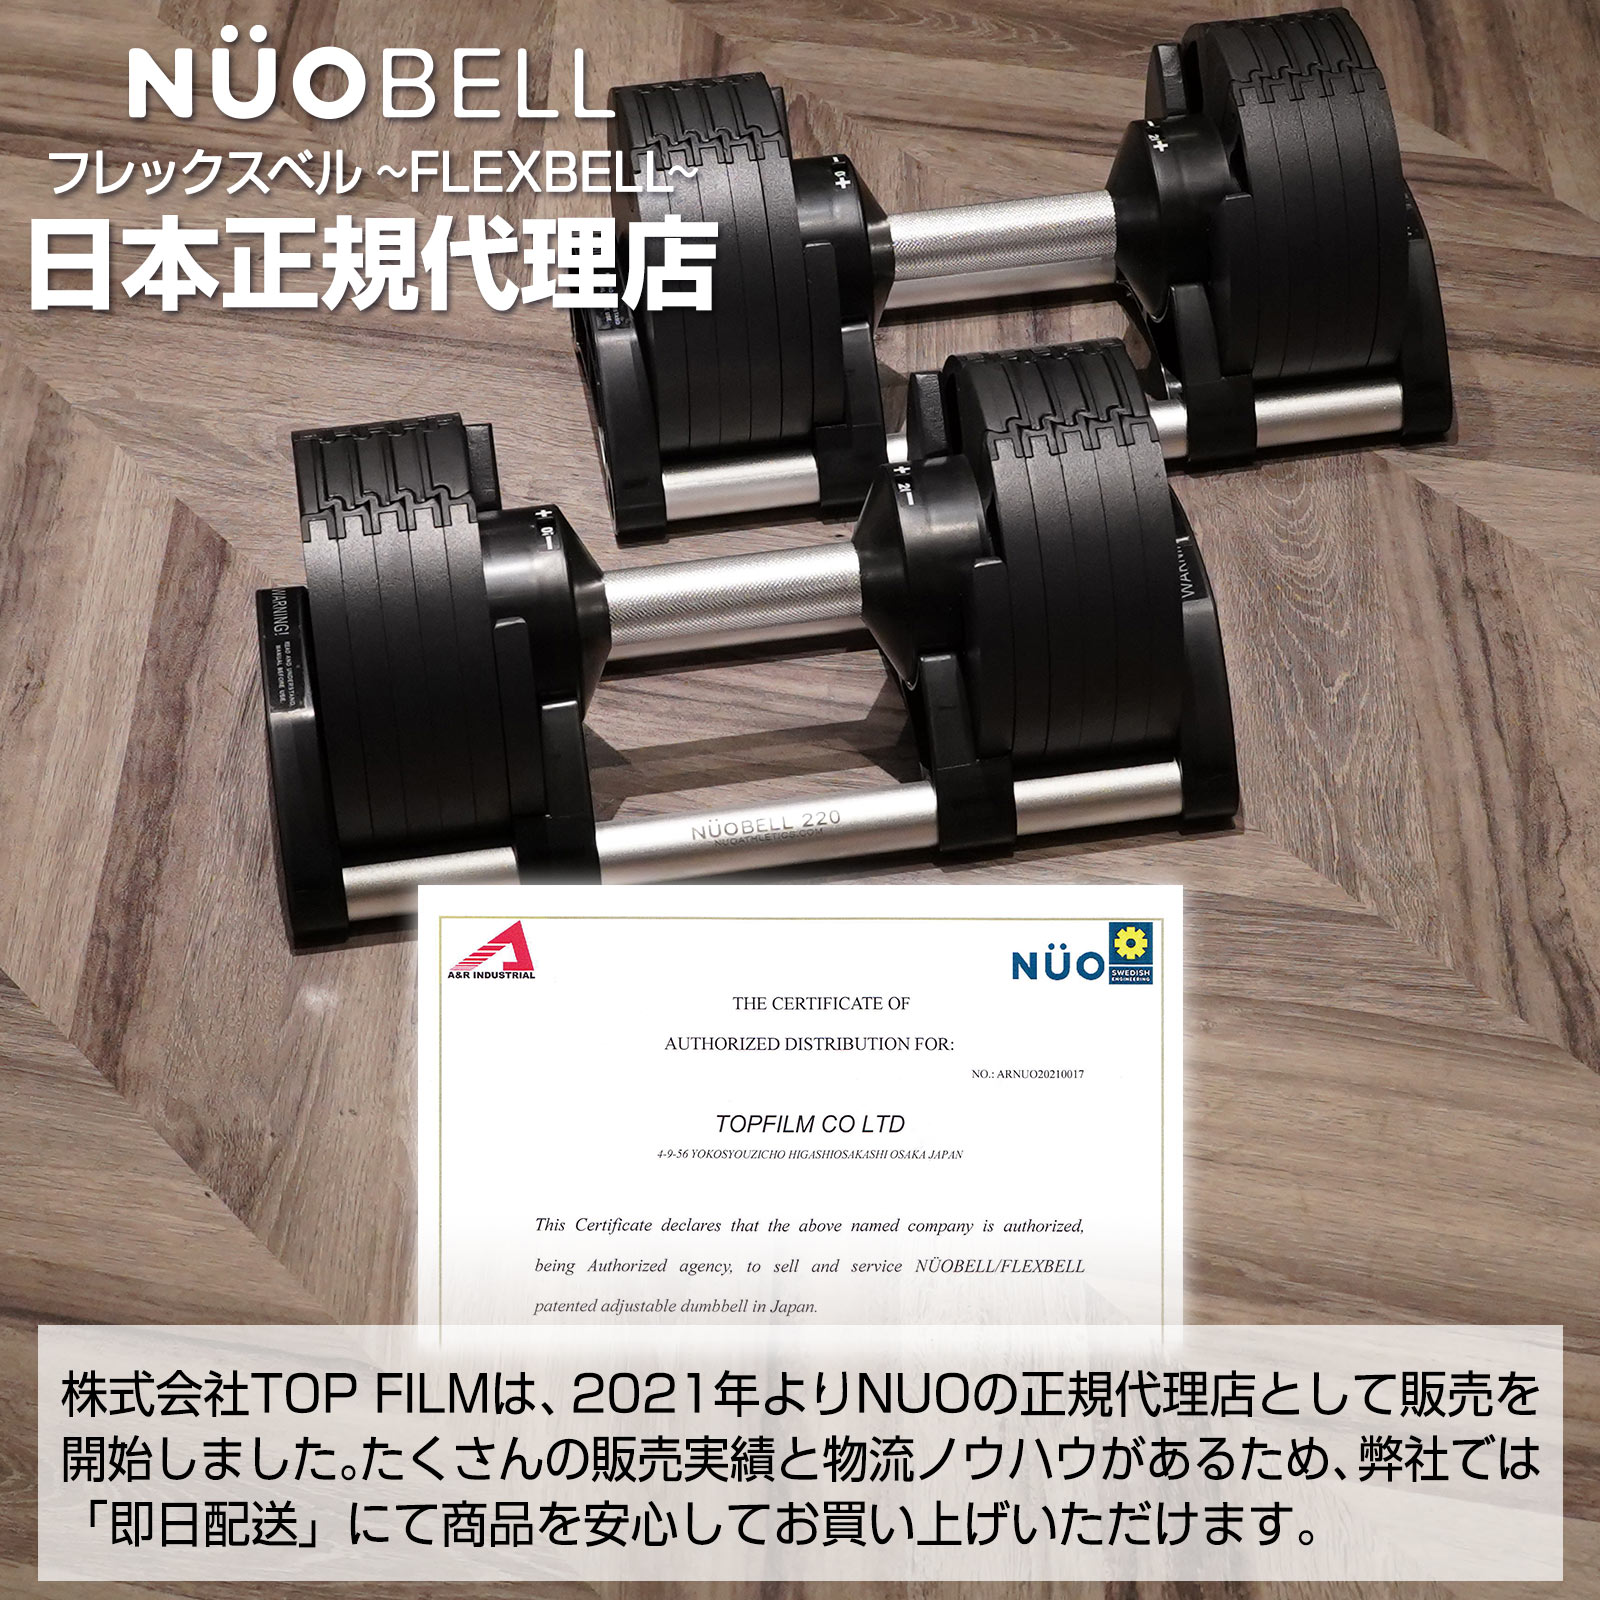 ダンベル 可変式ダンベル フレックスベル 32kg 2kg刻み NUO正規品 